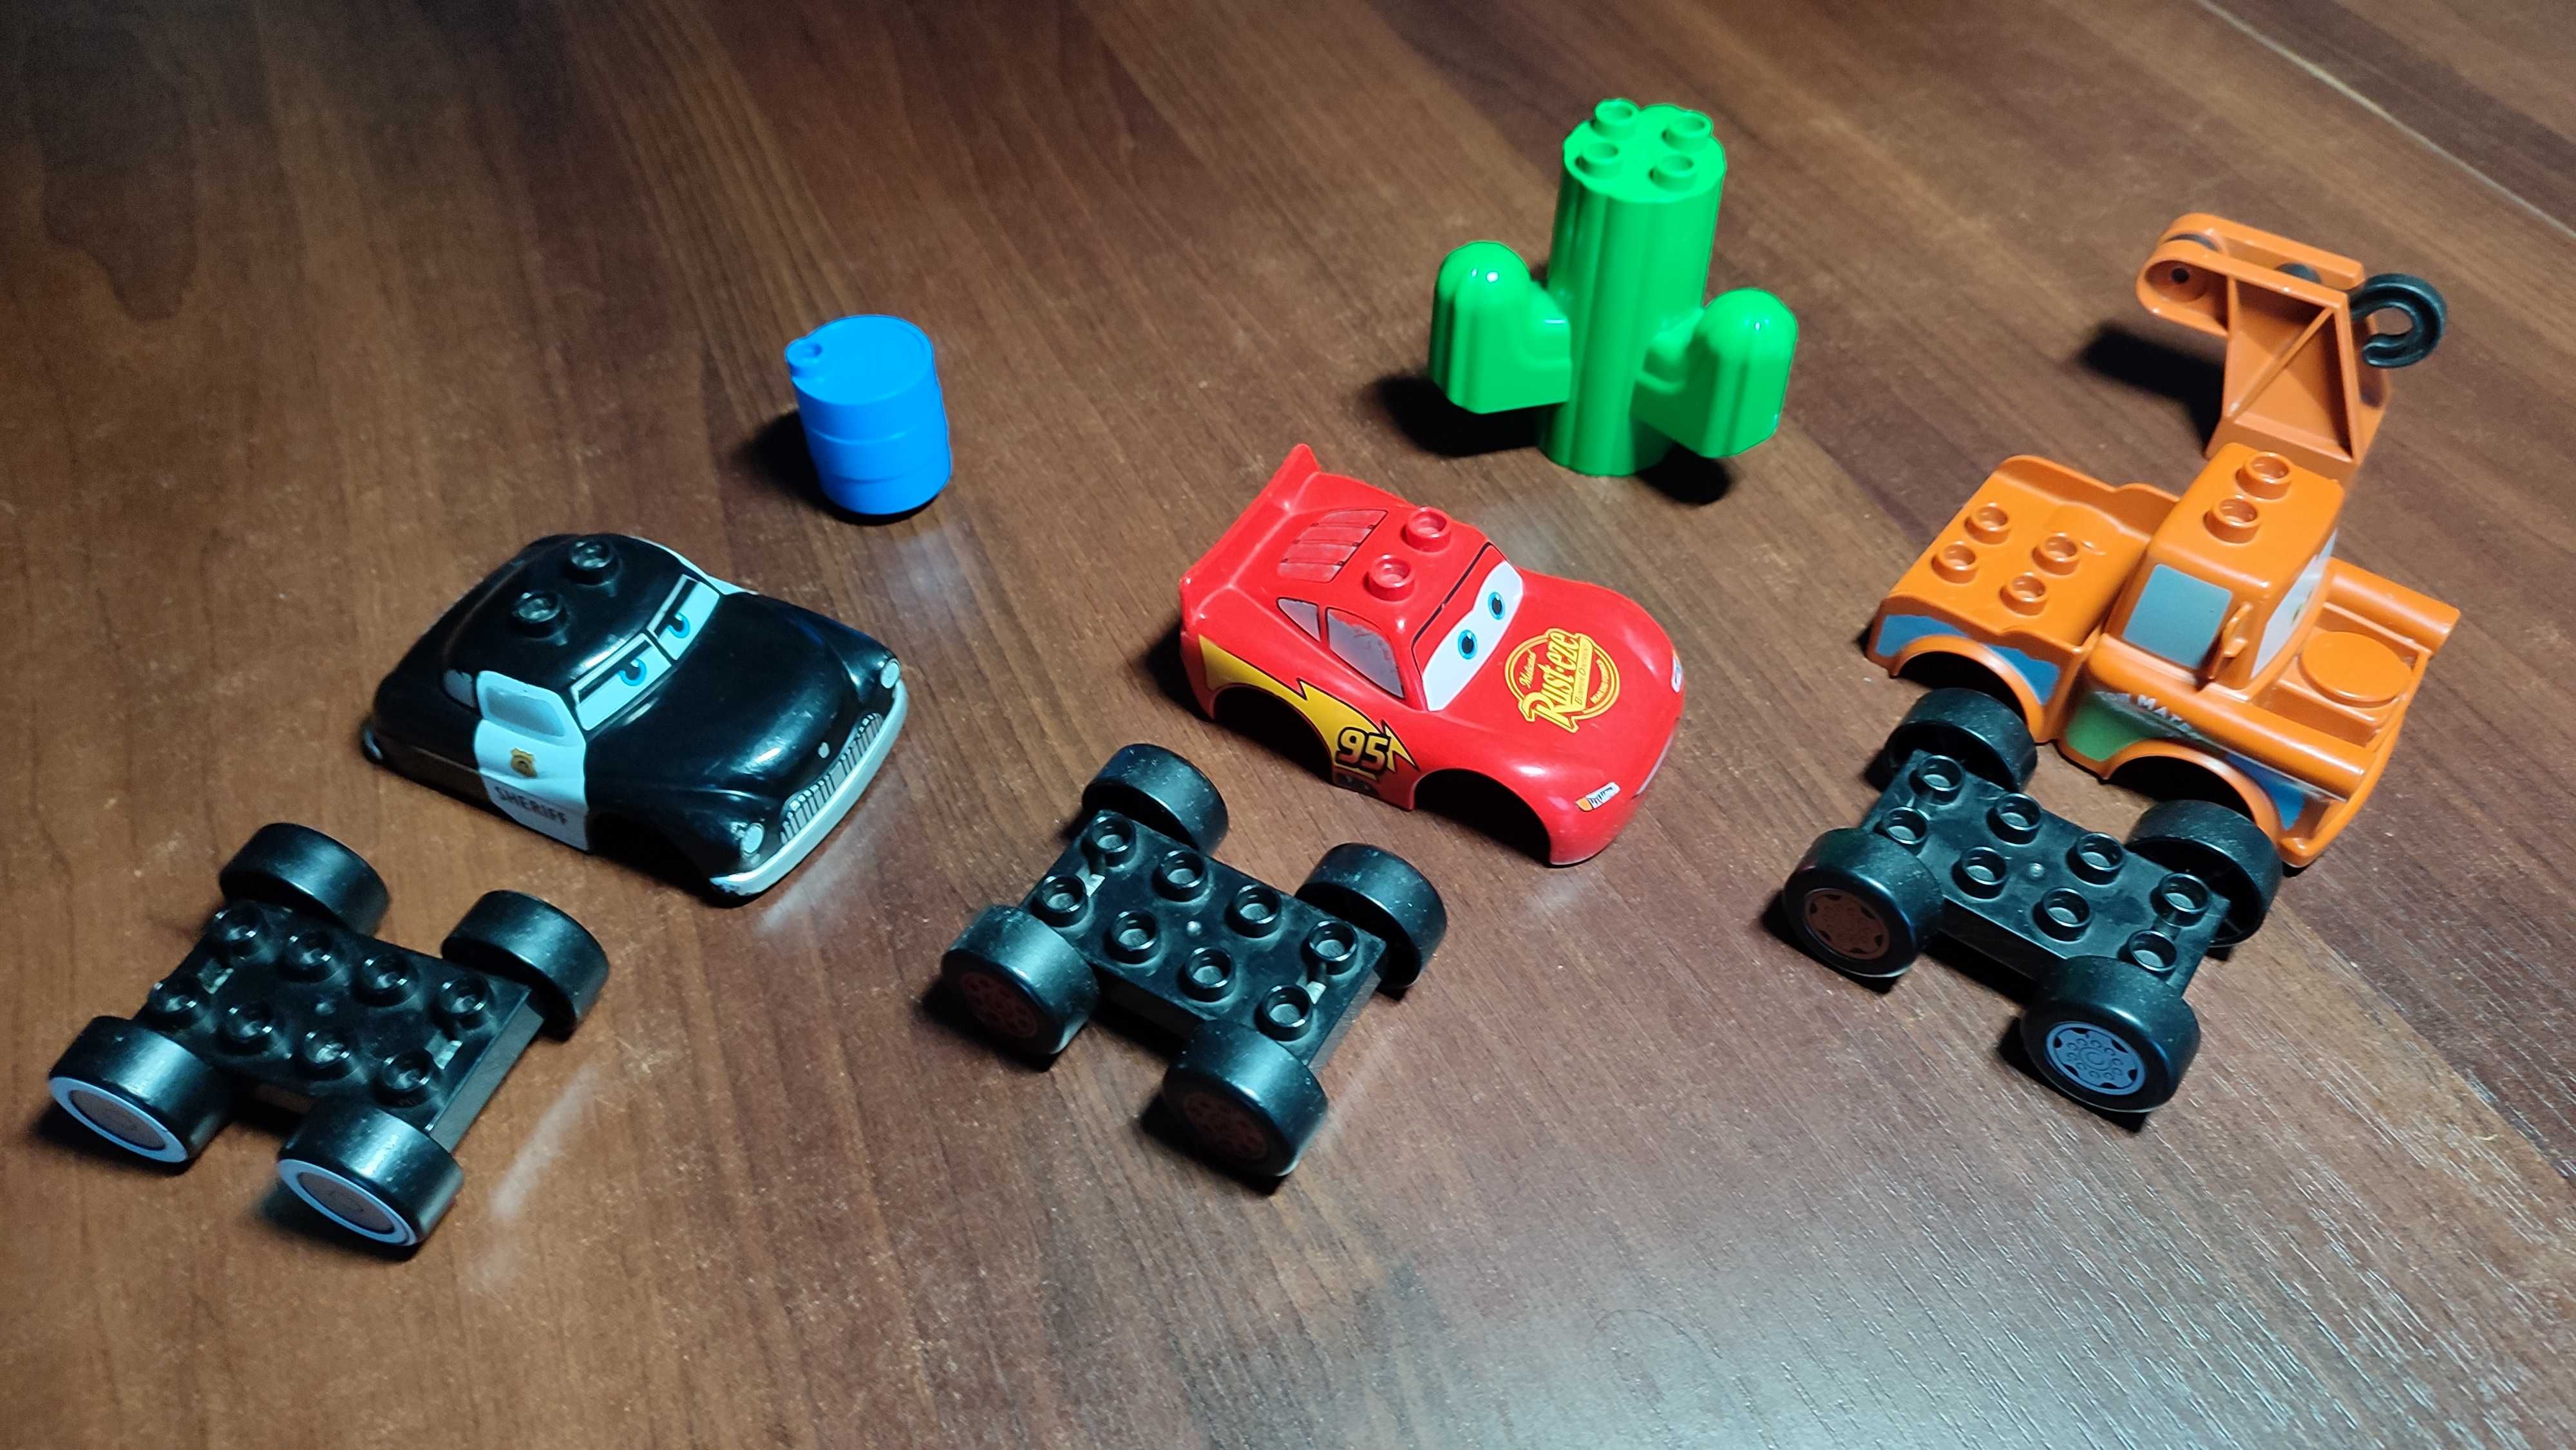 Samochody z zestawu LEGO duplo 5813 i 5814 - Cars, Auta, McQueen